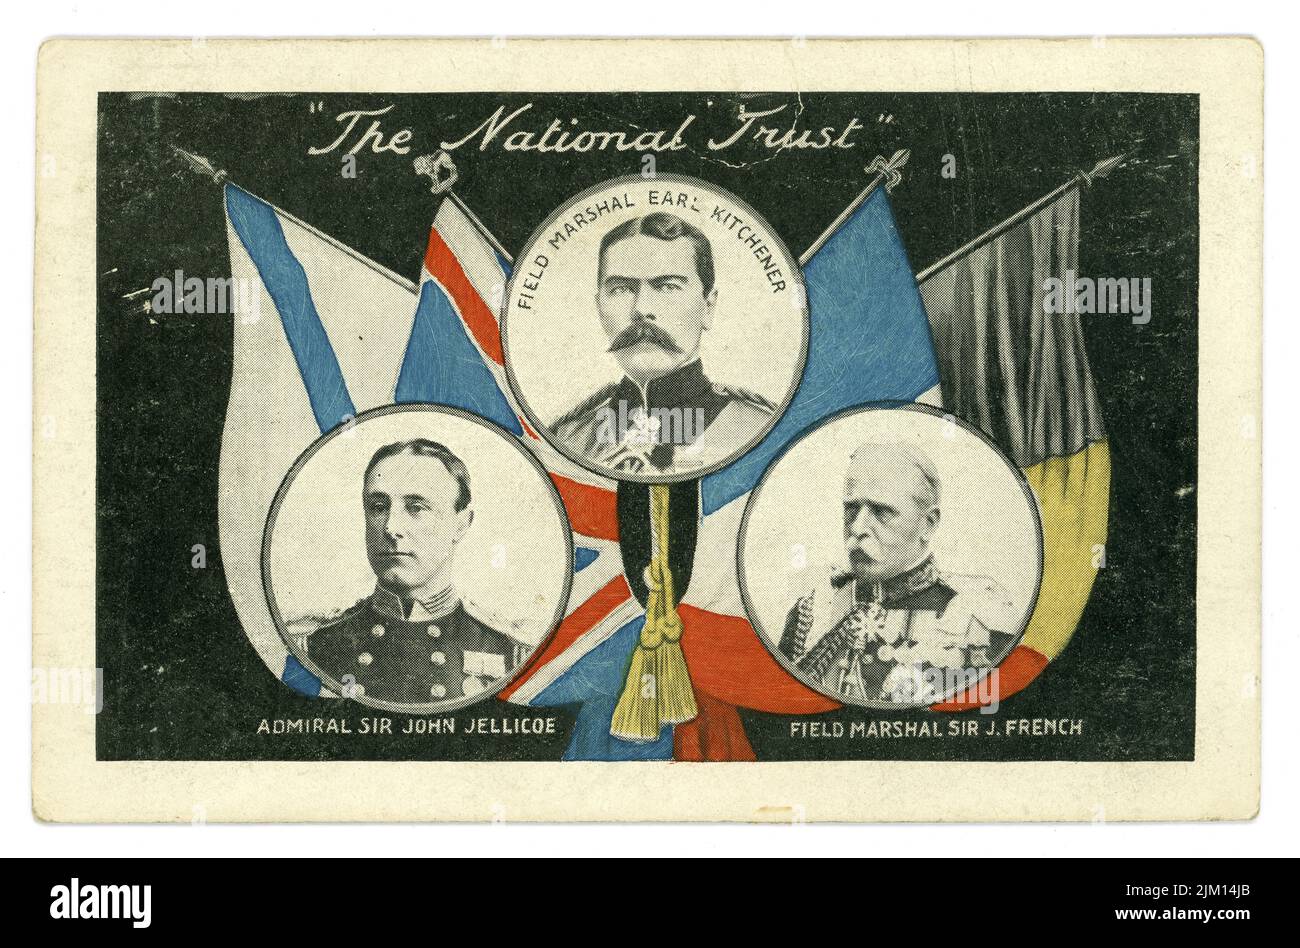 Originalpostkarte aus der Zeit WW1, Feldmarschall des National Trust Earl Kitchener und Sir J. French, Admiral Sir John Jellicoe (Supreme Command Home Fleets 1914) mit alliierten Flaggen, Großbritannien Stockfoto